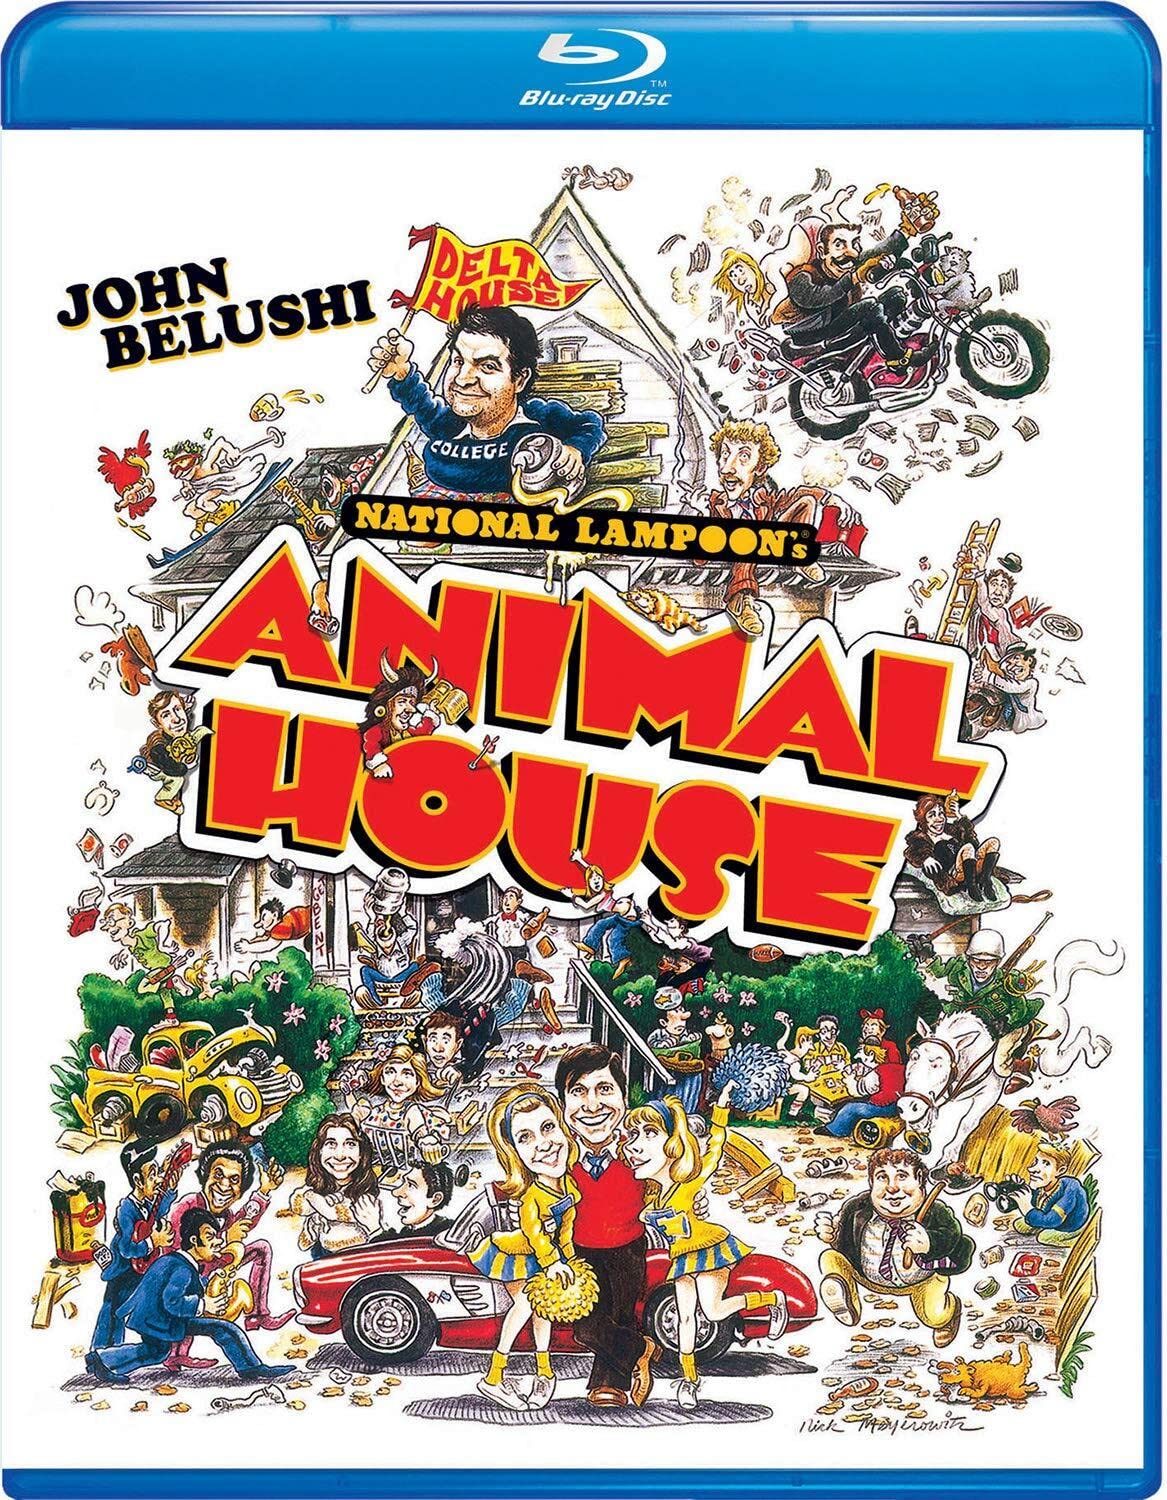 $5.99: National Lampoon's Animal House (Blu-ray)